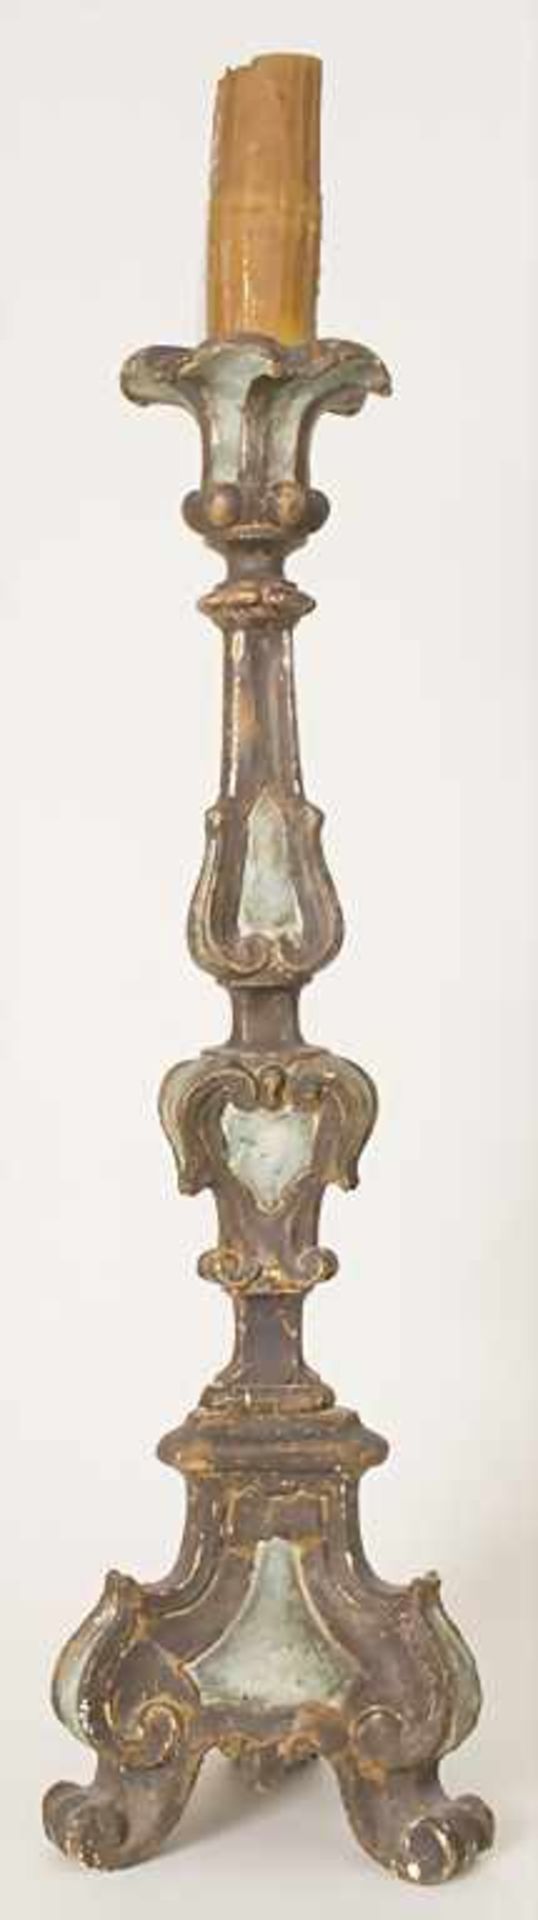 Altarleuchter / An altar candlestick, süddeutsch 18. Jh.Material: Holz, geschnitzt, farbig - Bild 5 aus 13